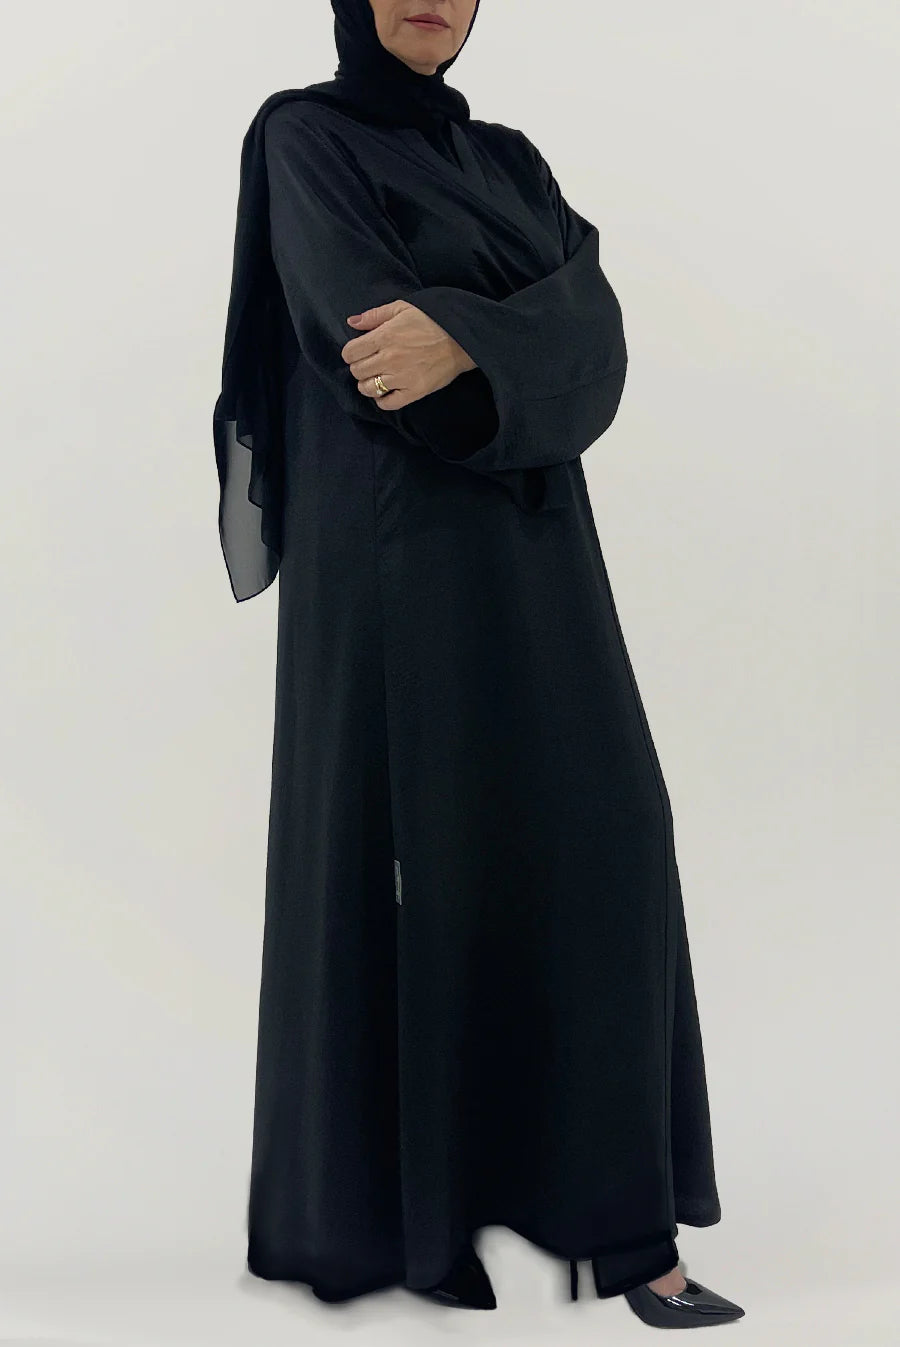 Plain Black Elegant Abaya